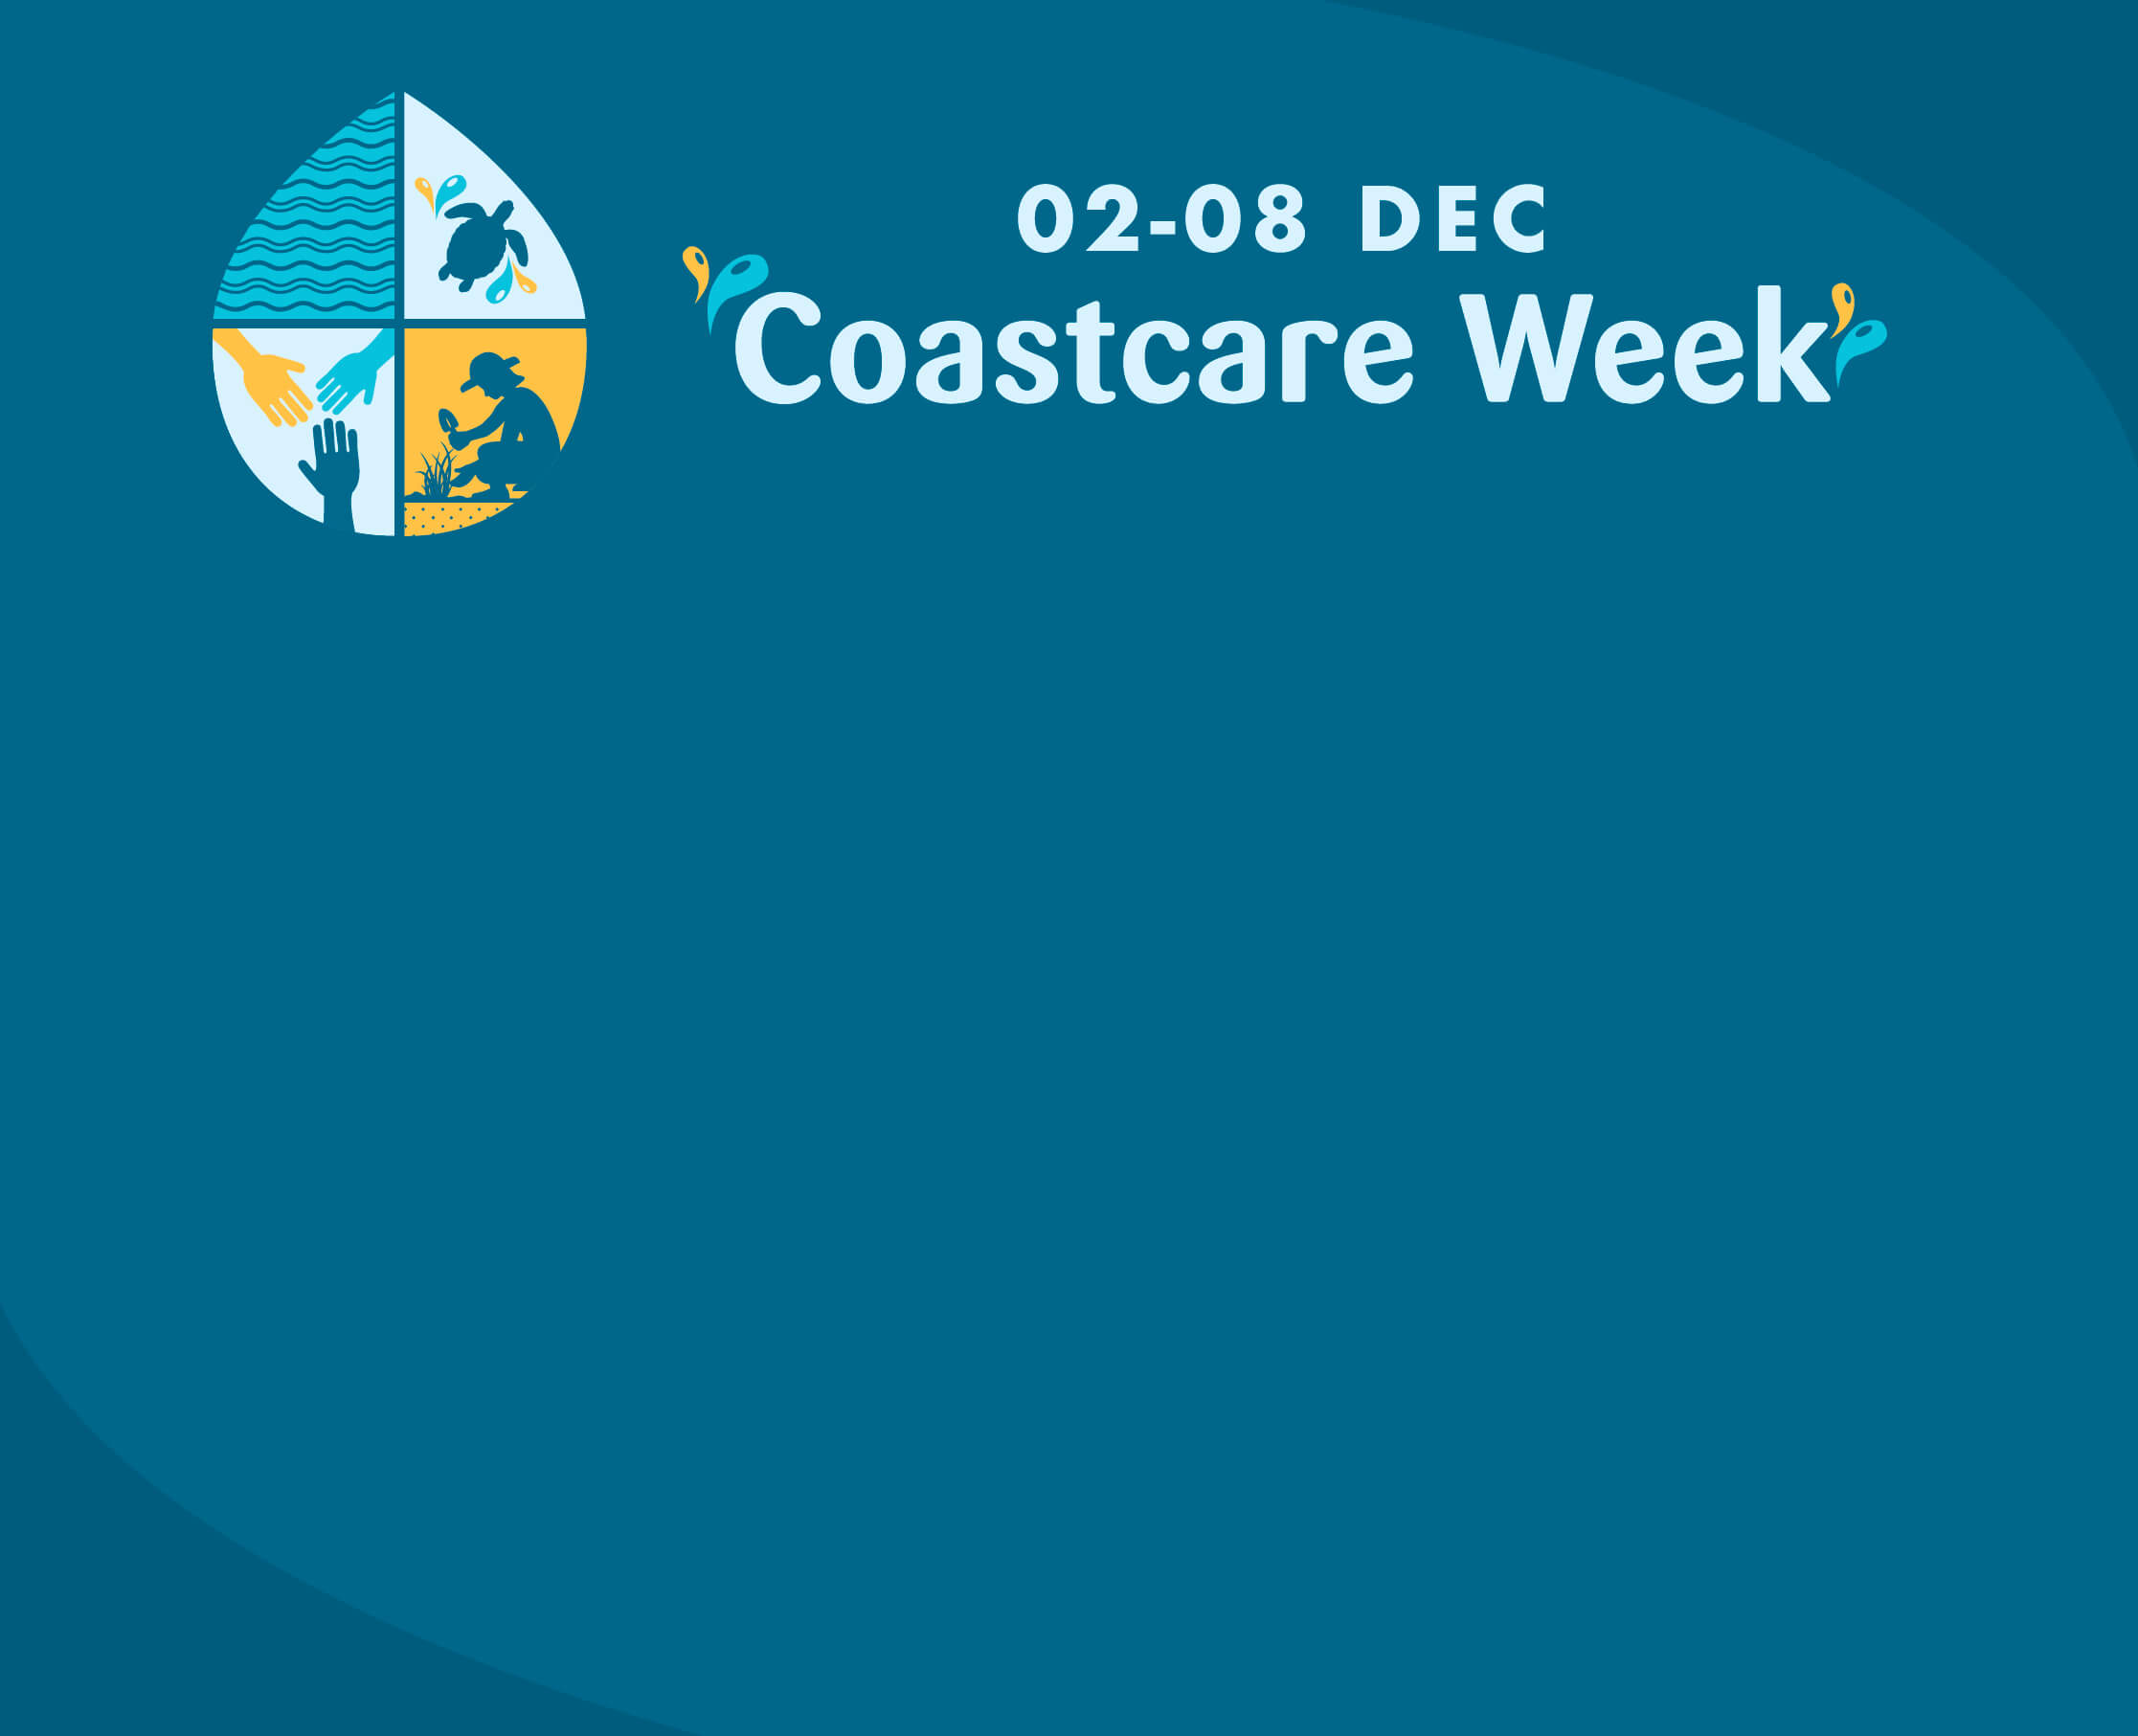 Coastcare event invite